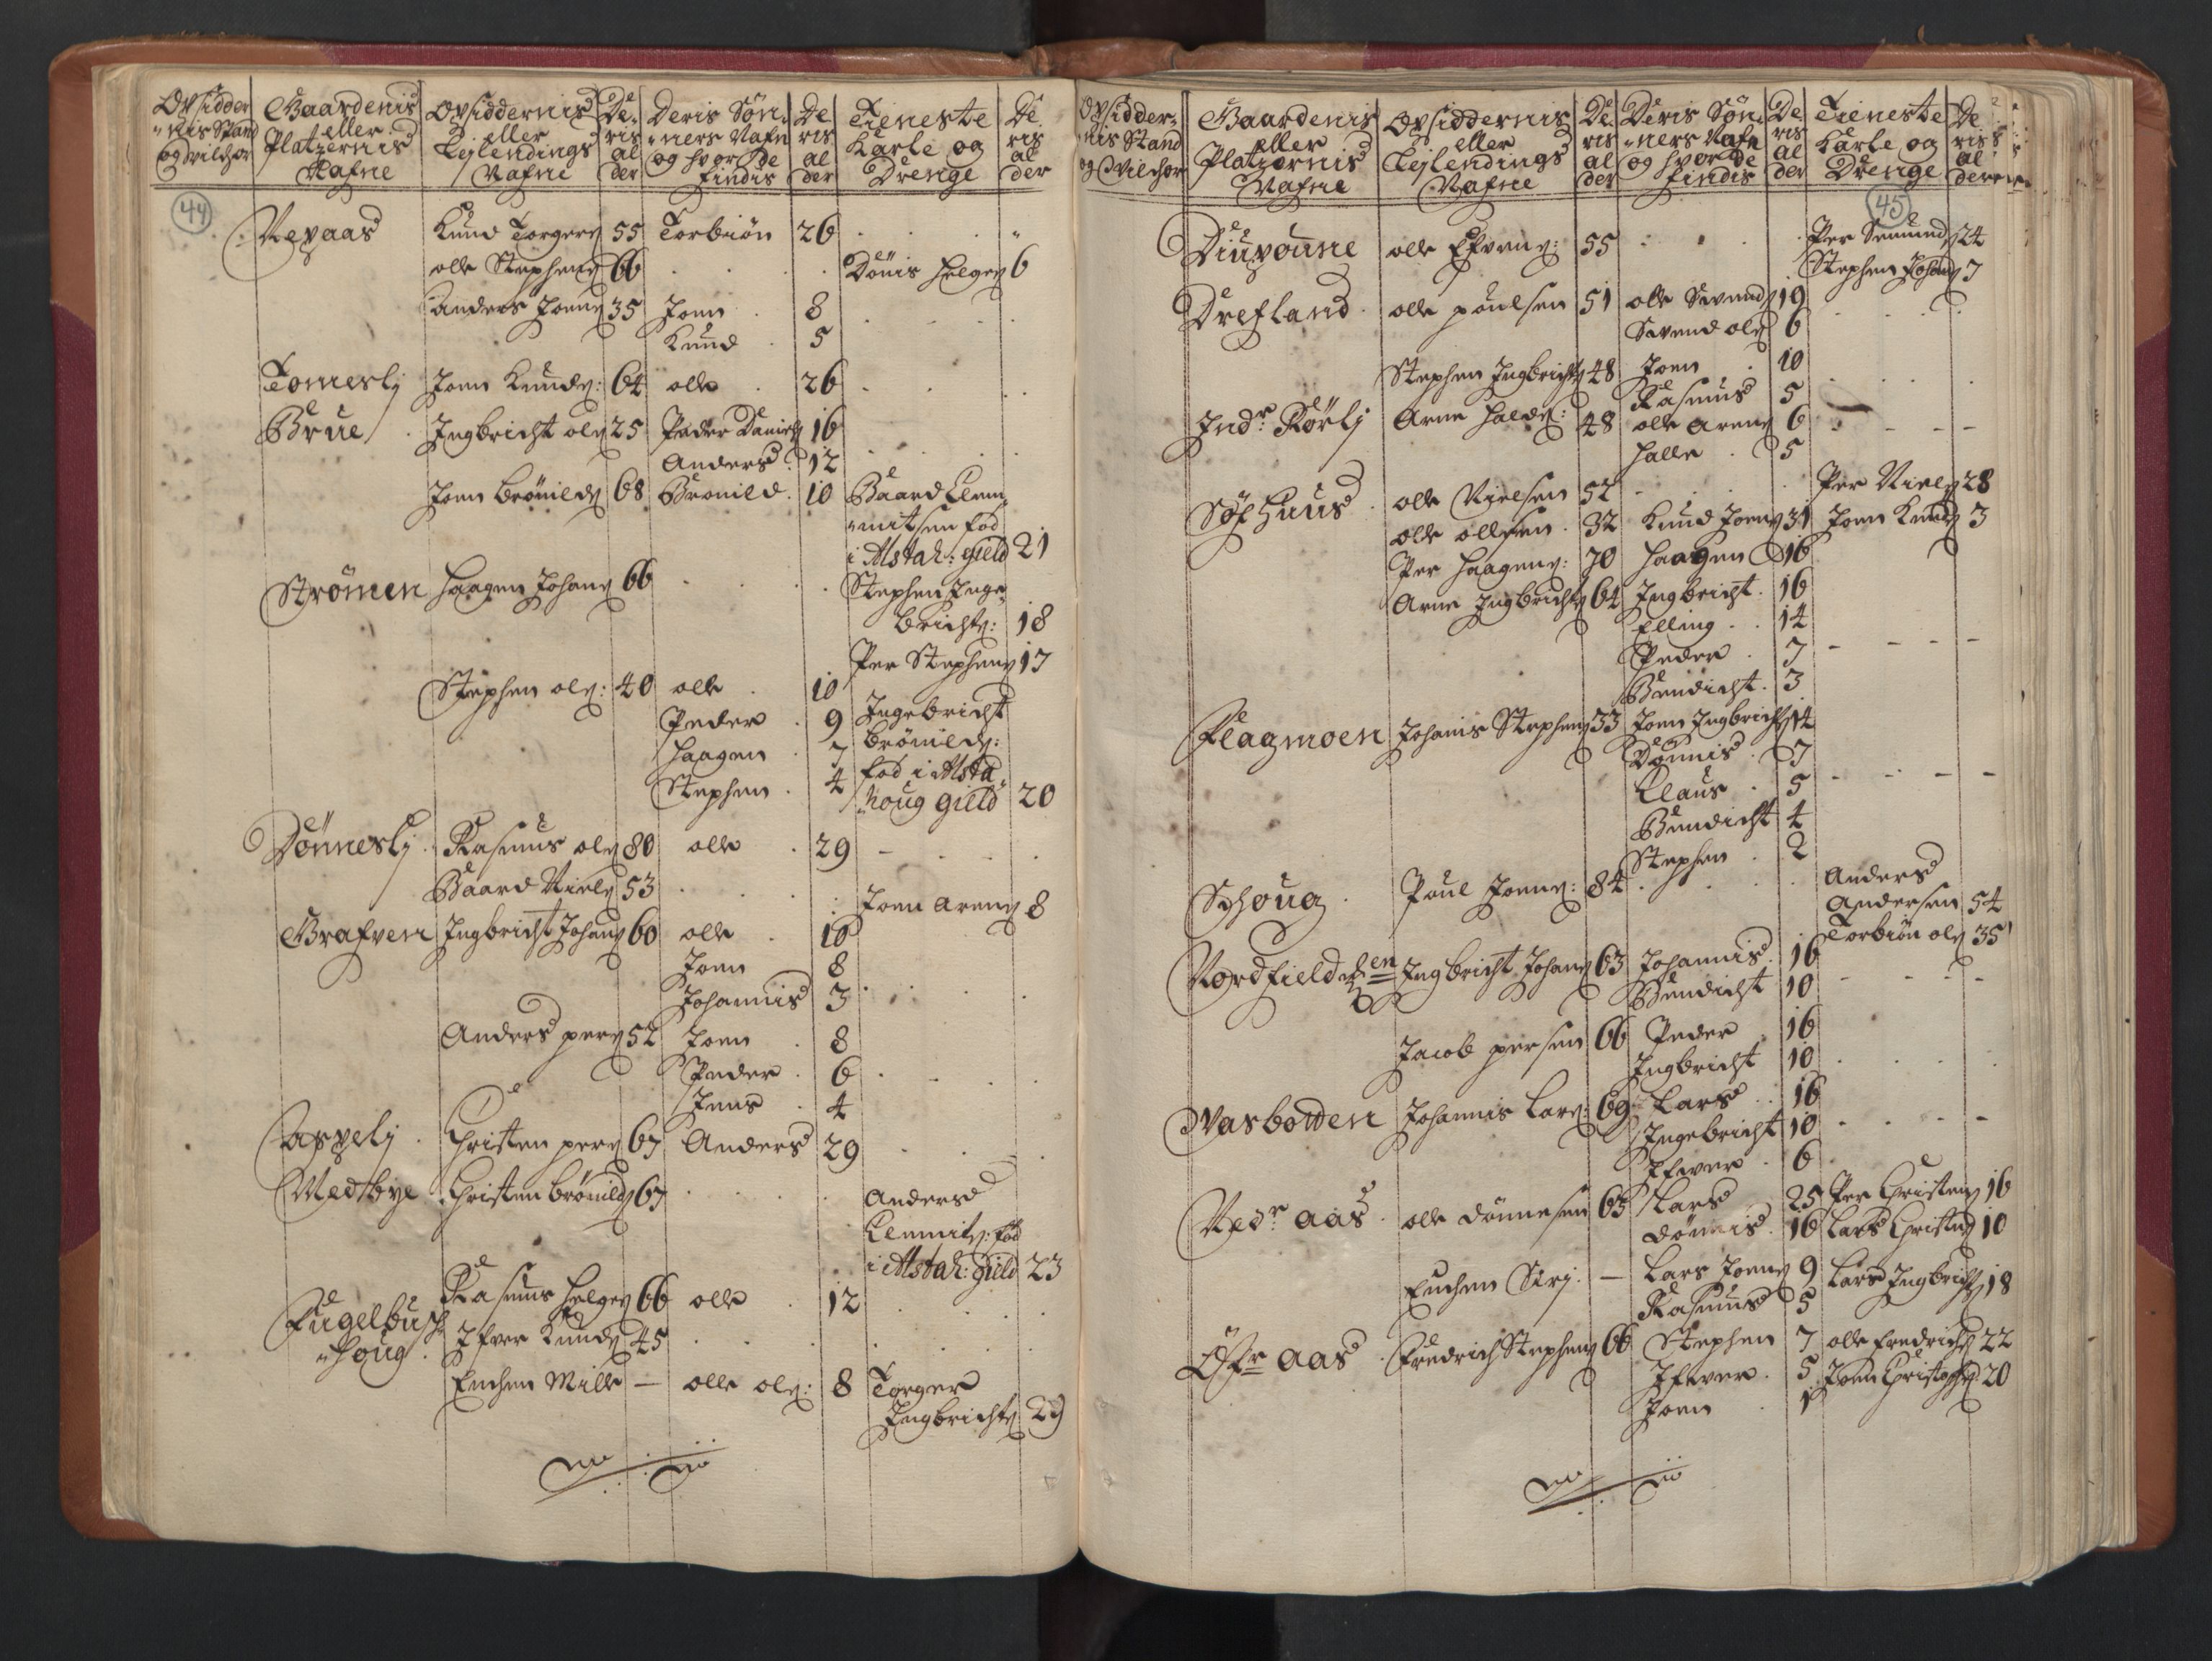 RA, Manntallet 1701, nr. 16: Helgeland fogderi, 1701, s. 44-45